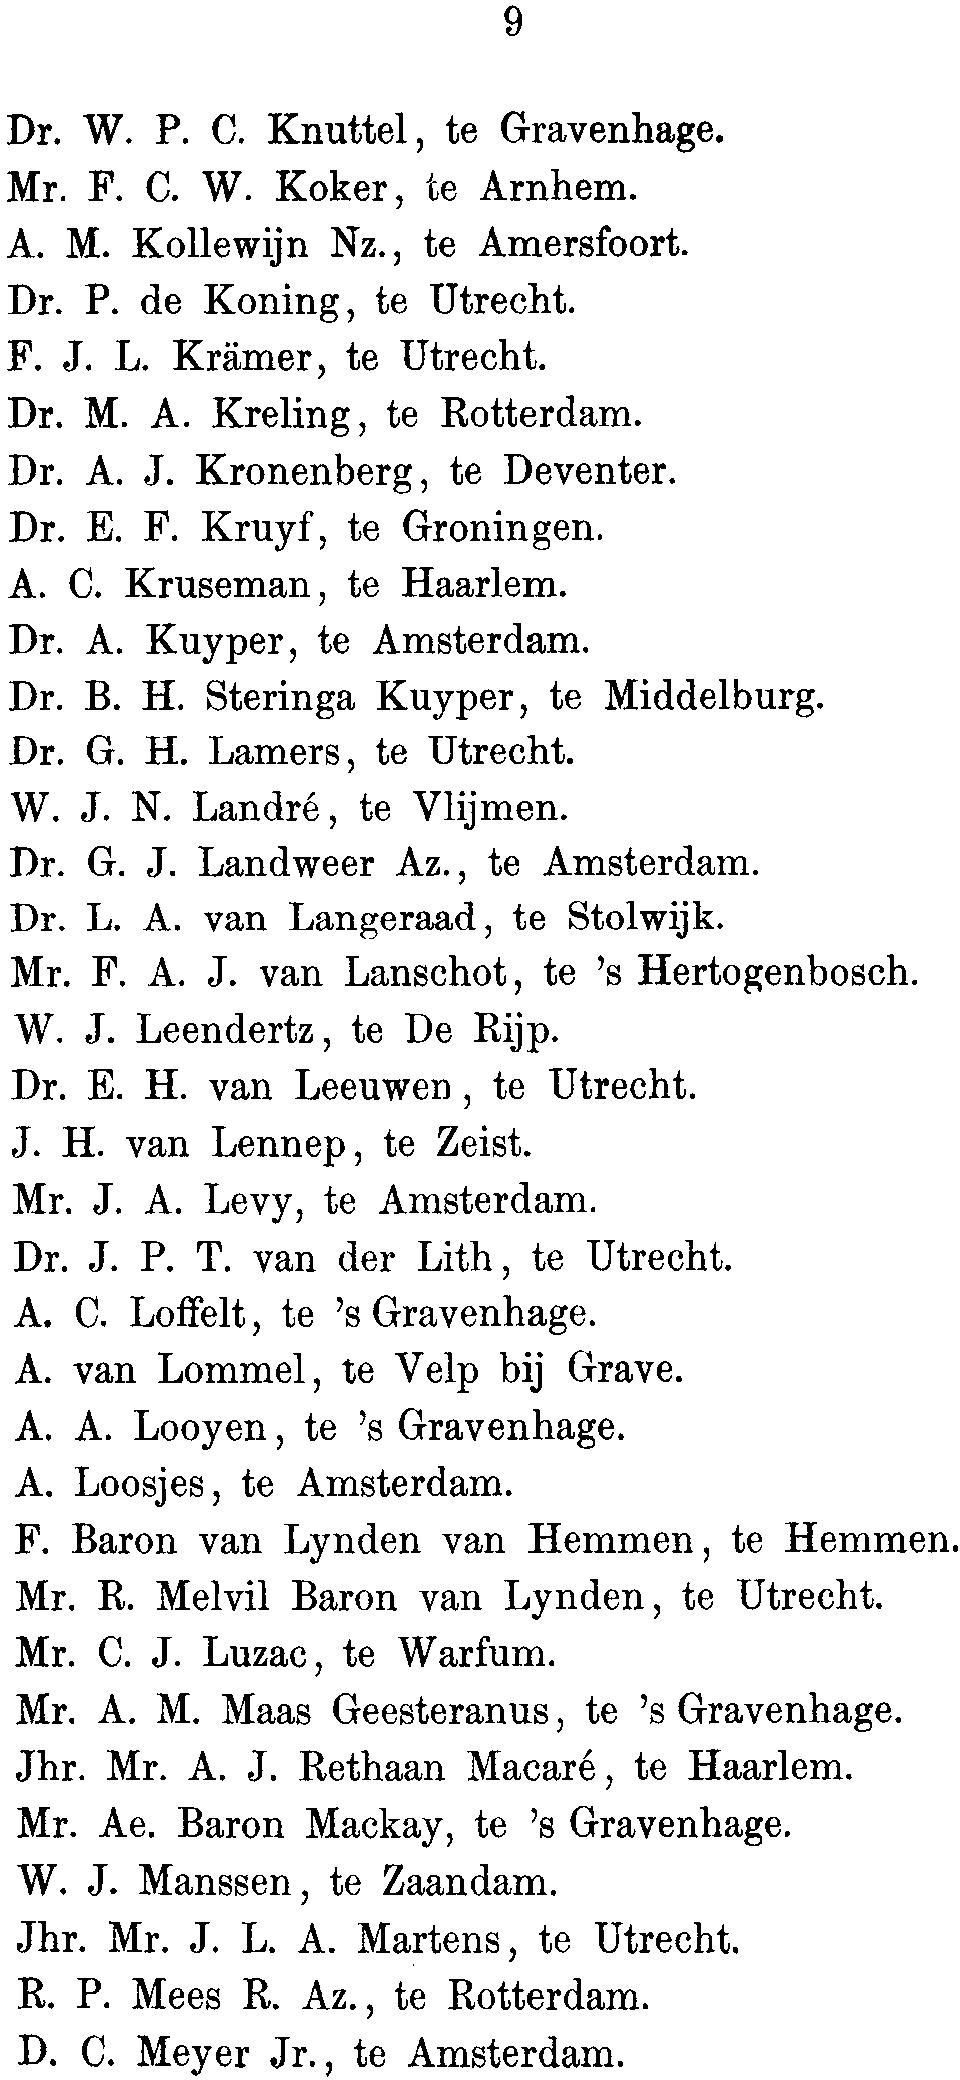 , to Amsterdam. Dr. L. A. van Langeraad, to Stolwijk. Mr. F. A. J. van Lanschot, to 's Hertogenbosch. W. J. Leendertz, to De Rijp. Dr. E. H. van Leeuwen, to Utrecht. J. H. van Lennep, to Zeist. Mr. J. A. Levy, to Amsterdam.